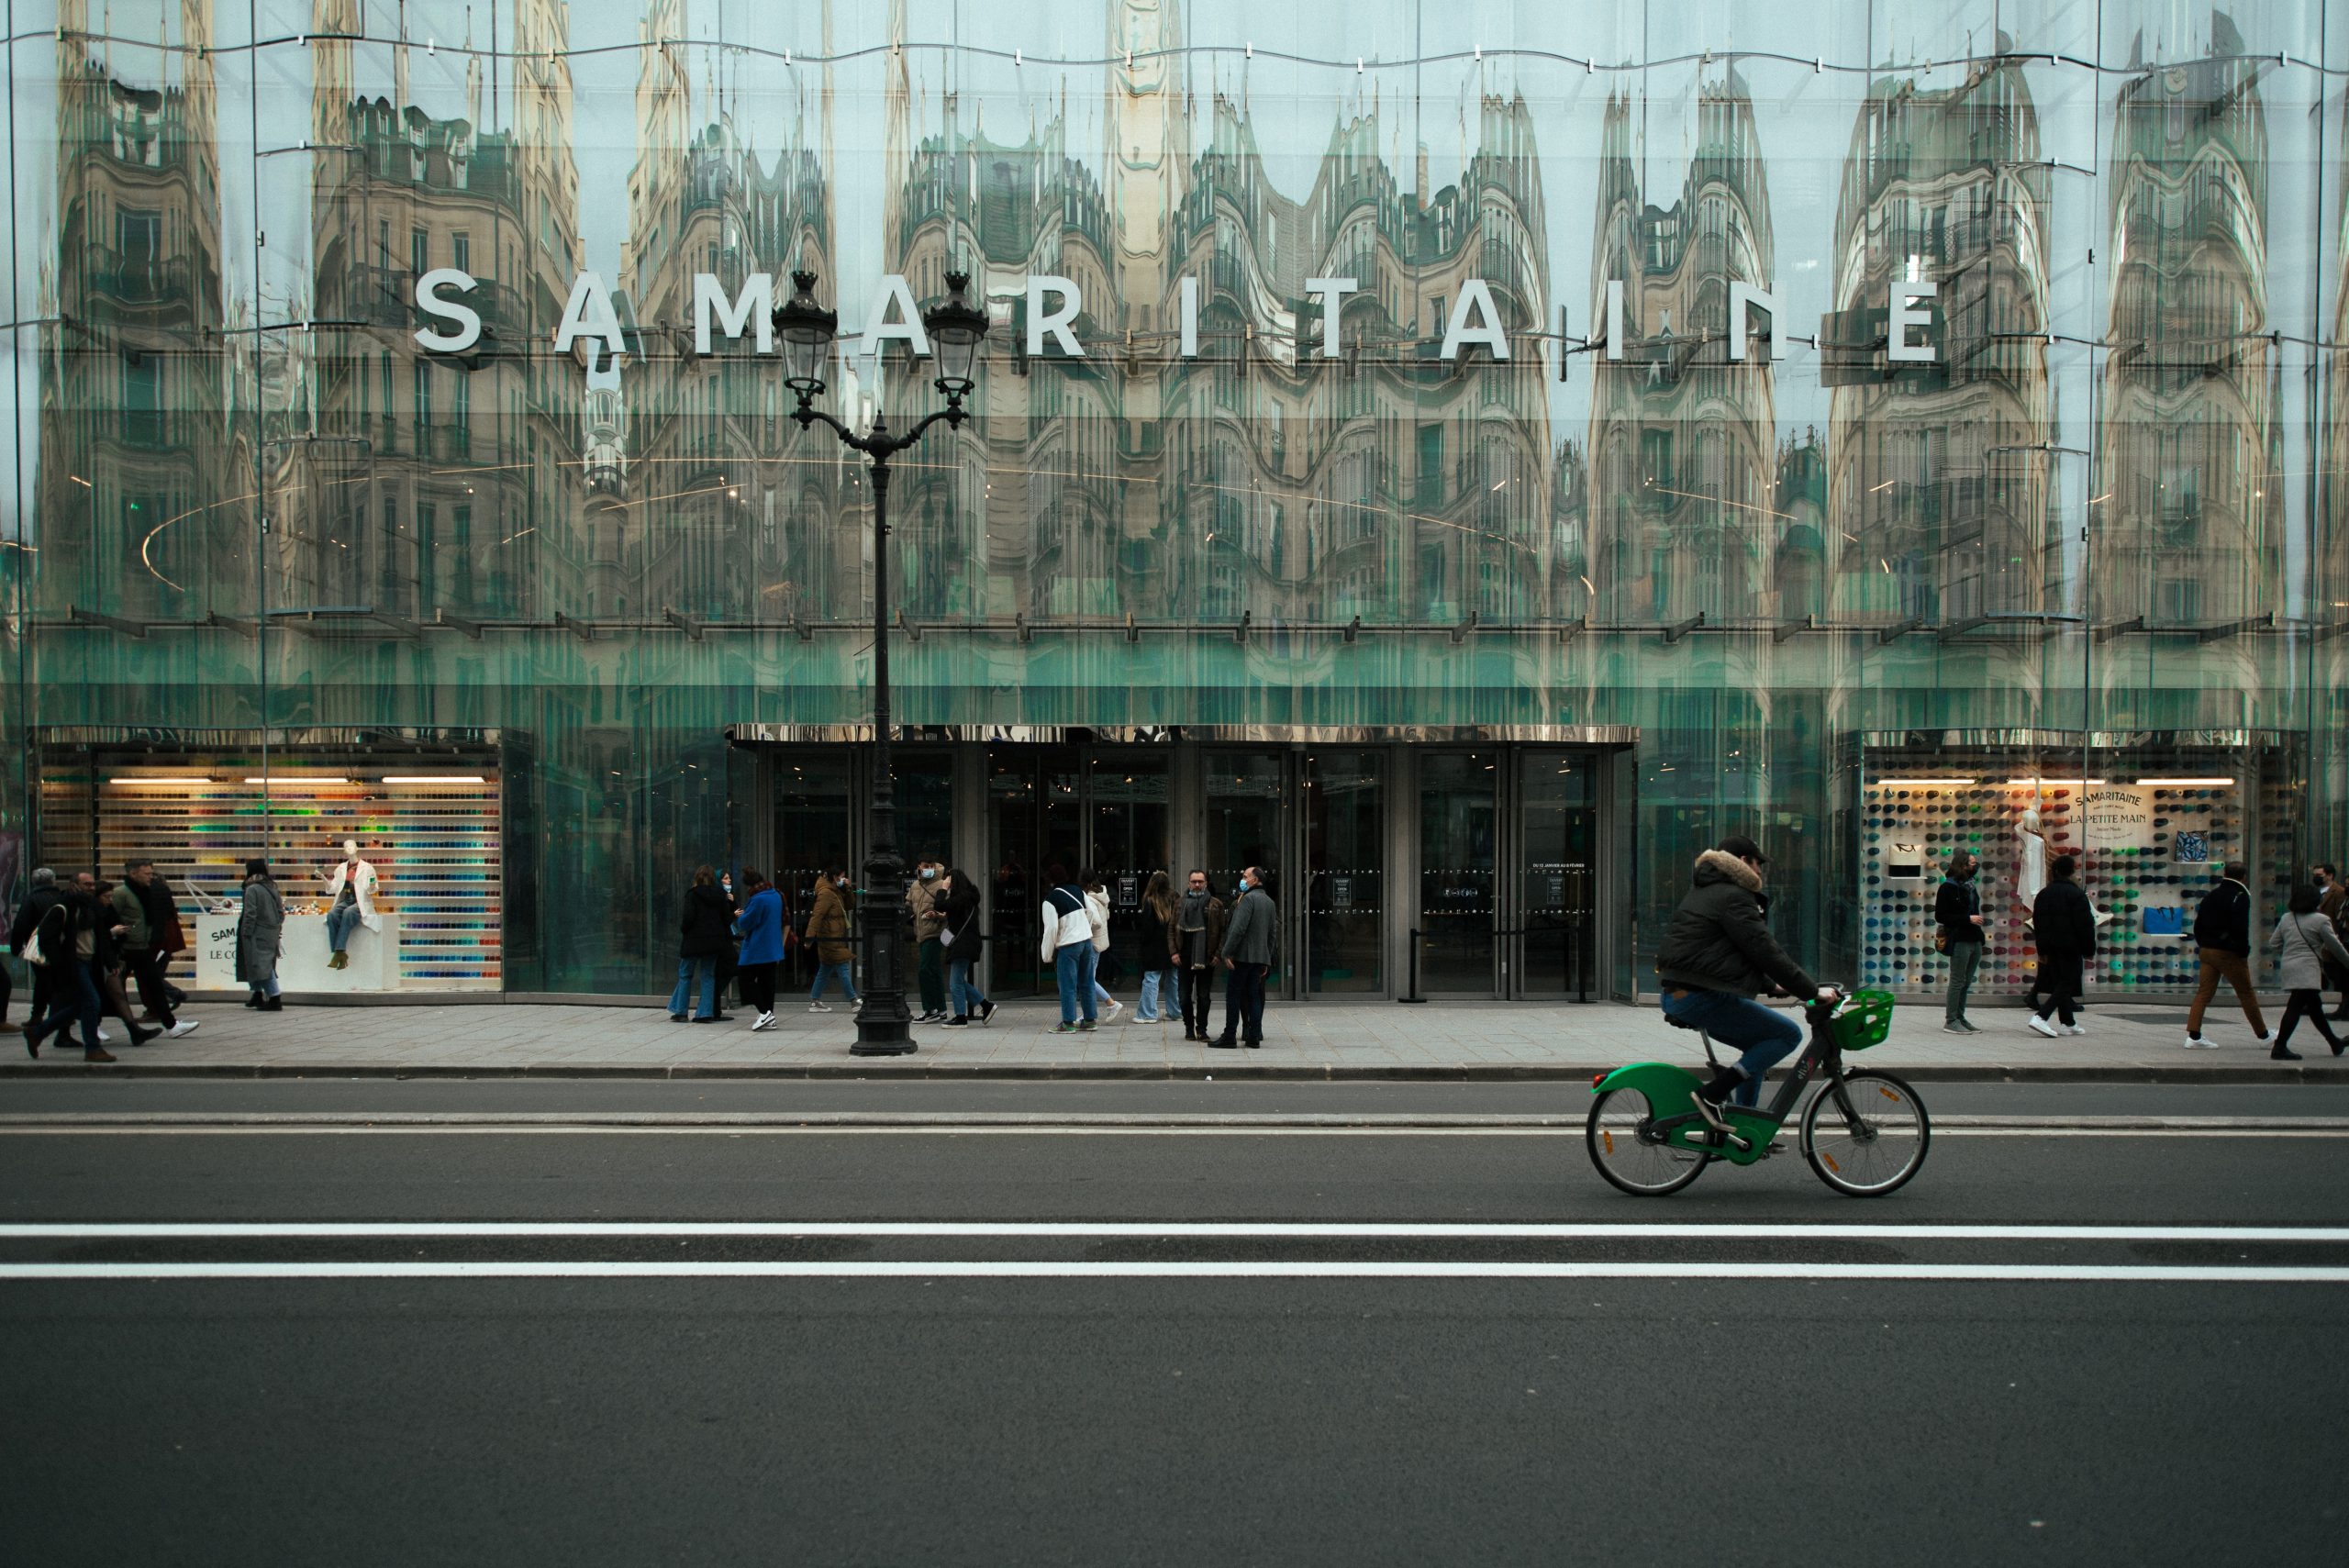 Samaritaine Paris: The Iconic Department Store